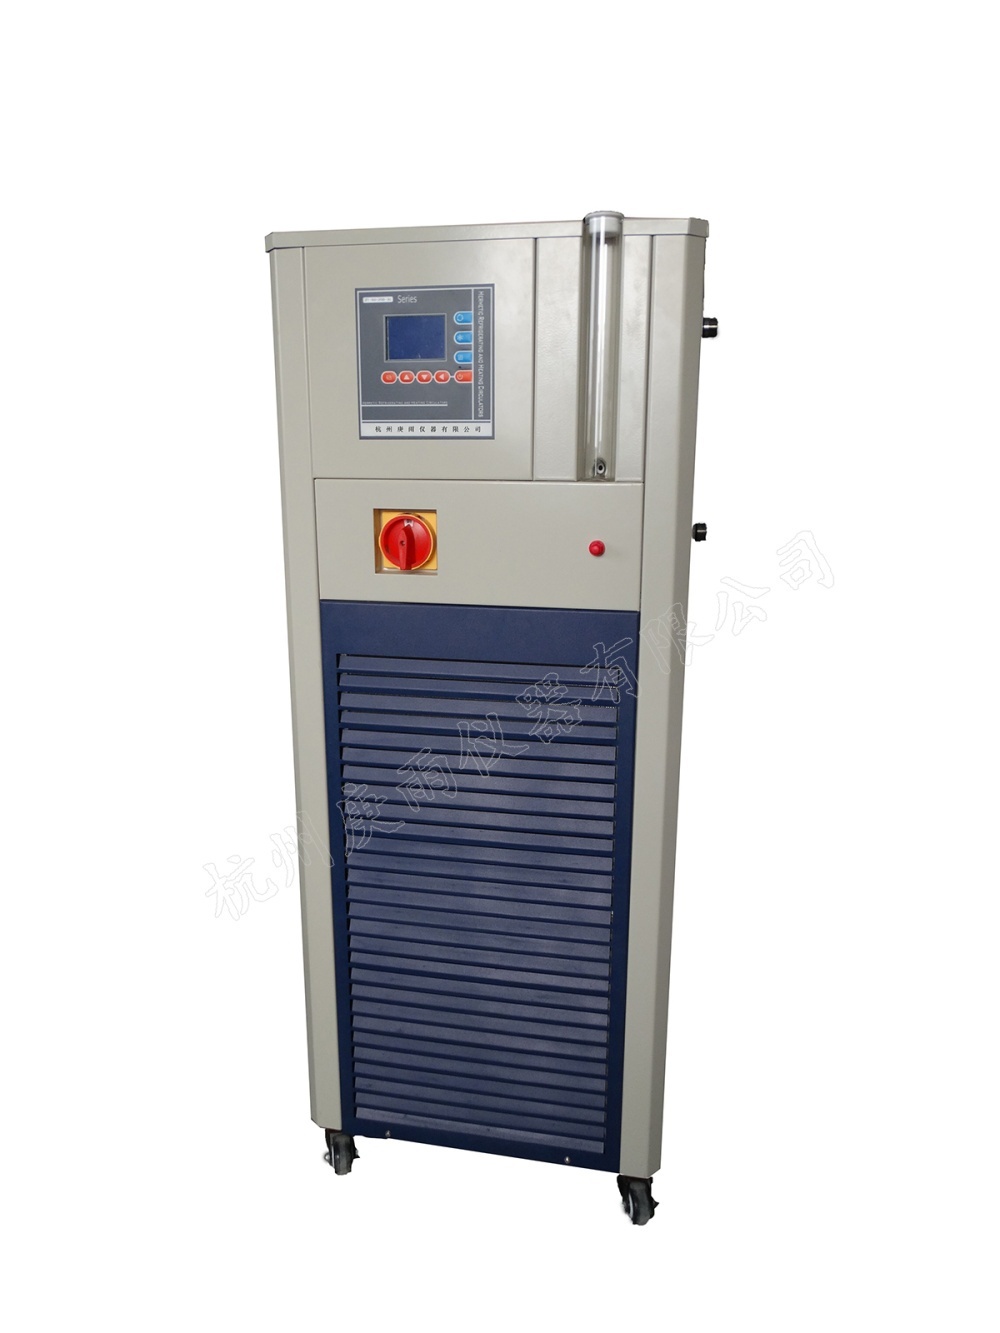 GDZT-100-200-30加热制冷循环器的图片